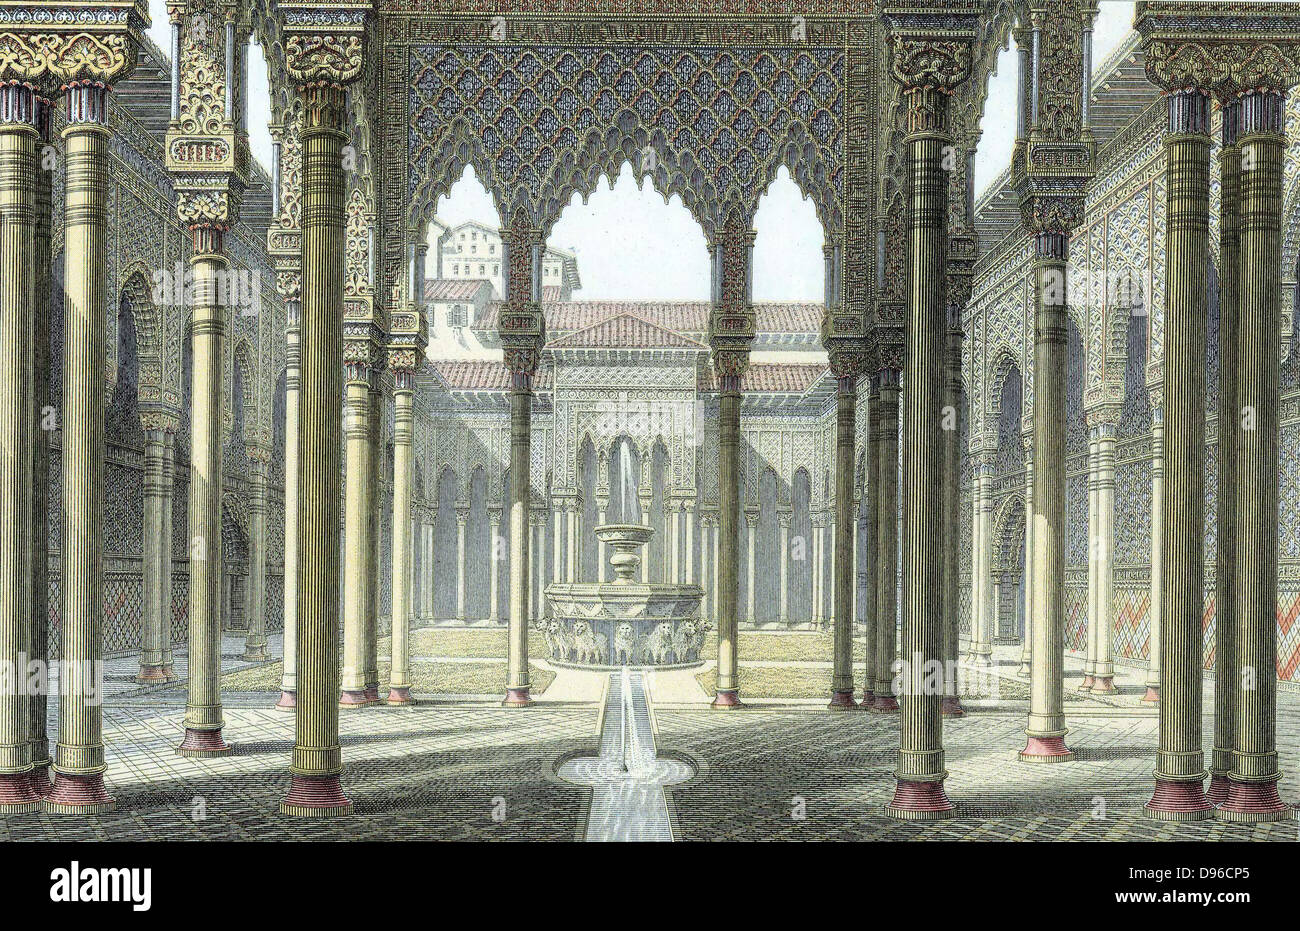 Palais de l'Alhambra de Grenade de rois maures en partie reconstruite par l'Empereur Charles V c1530. Cour des Lions. Fin du xixe siècle. gravure imprimée en couleur Banque D'Images